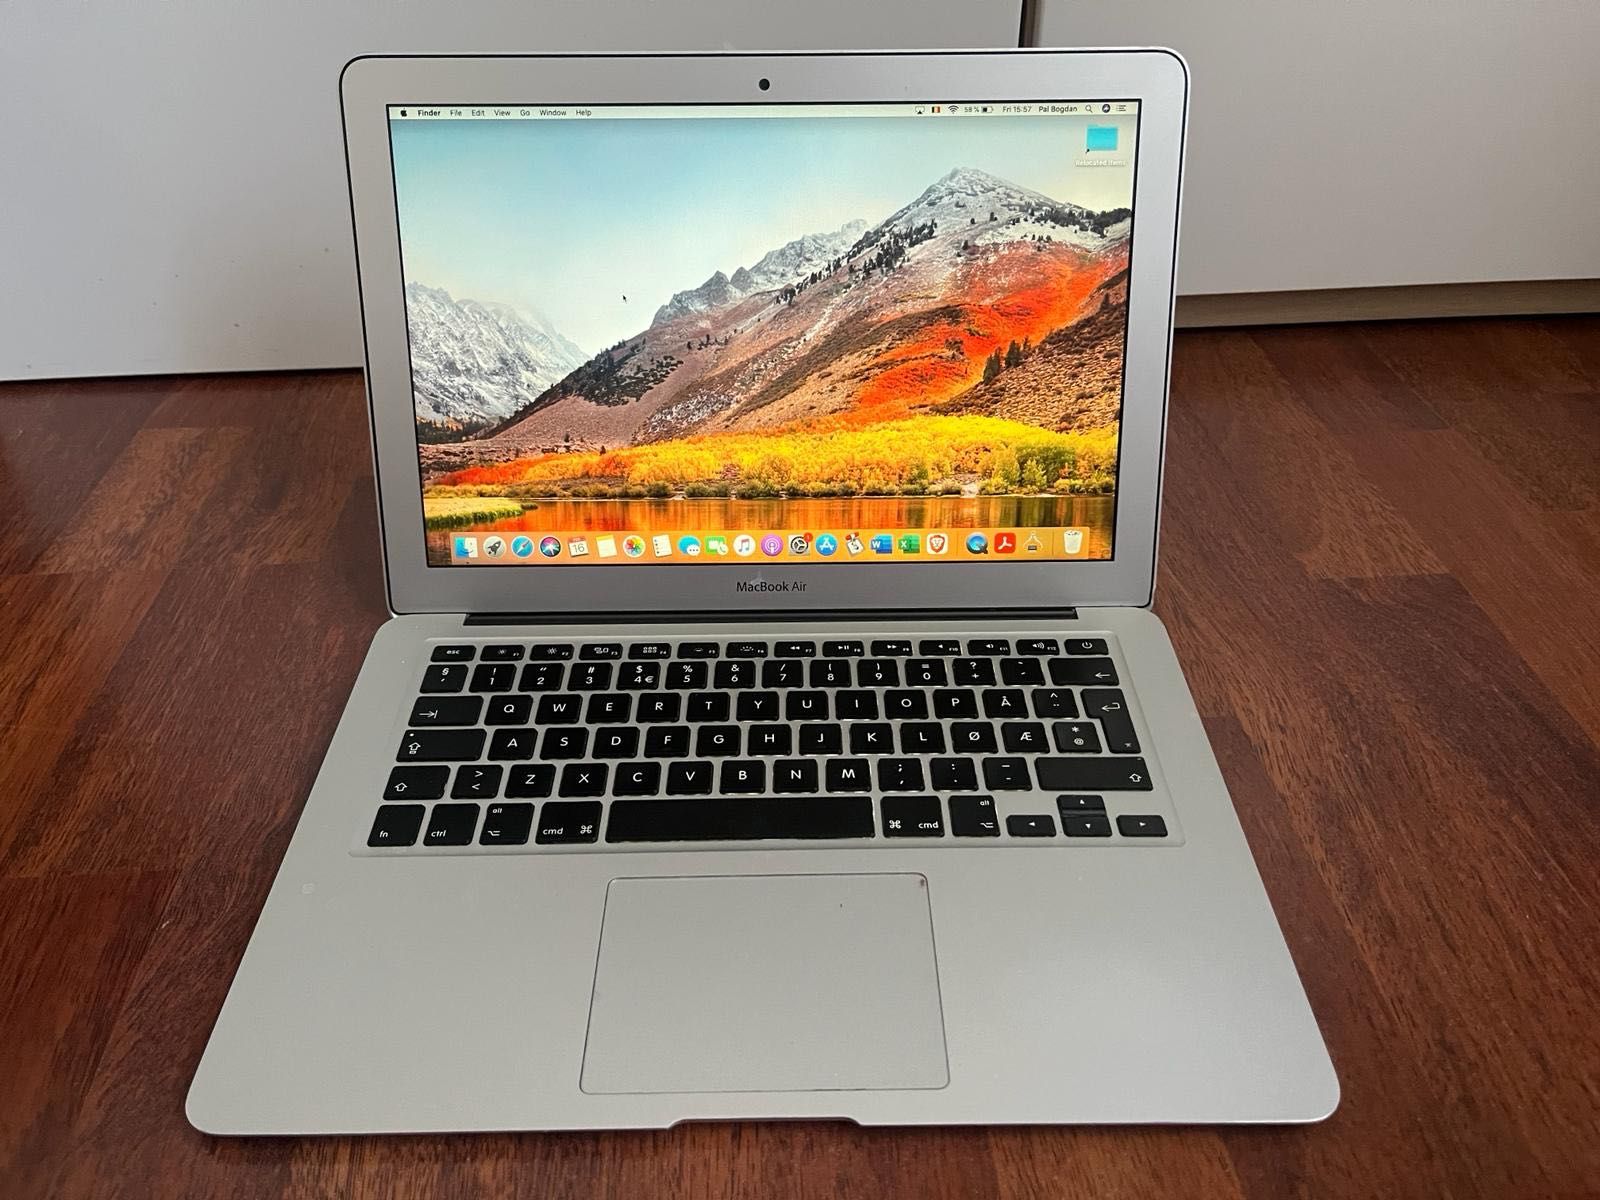 MacBook AIR 13-inch Mid 2012 i5 2.8GHz/4 GB RAM/SSD 128 GB/MagSafe